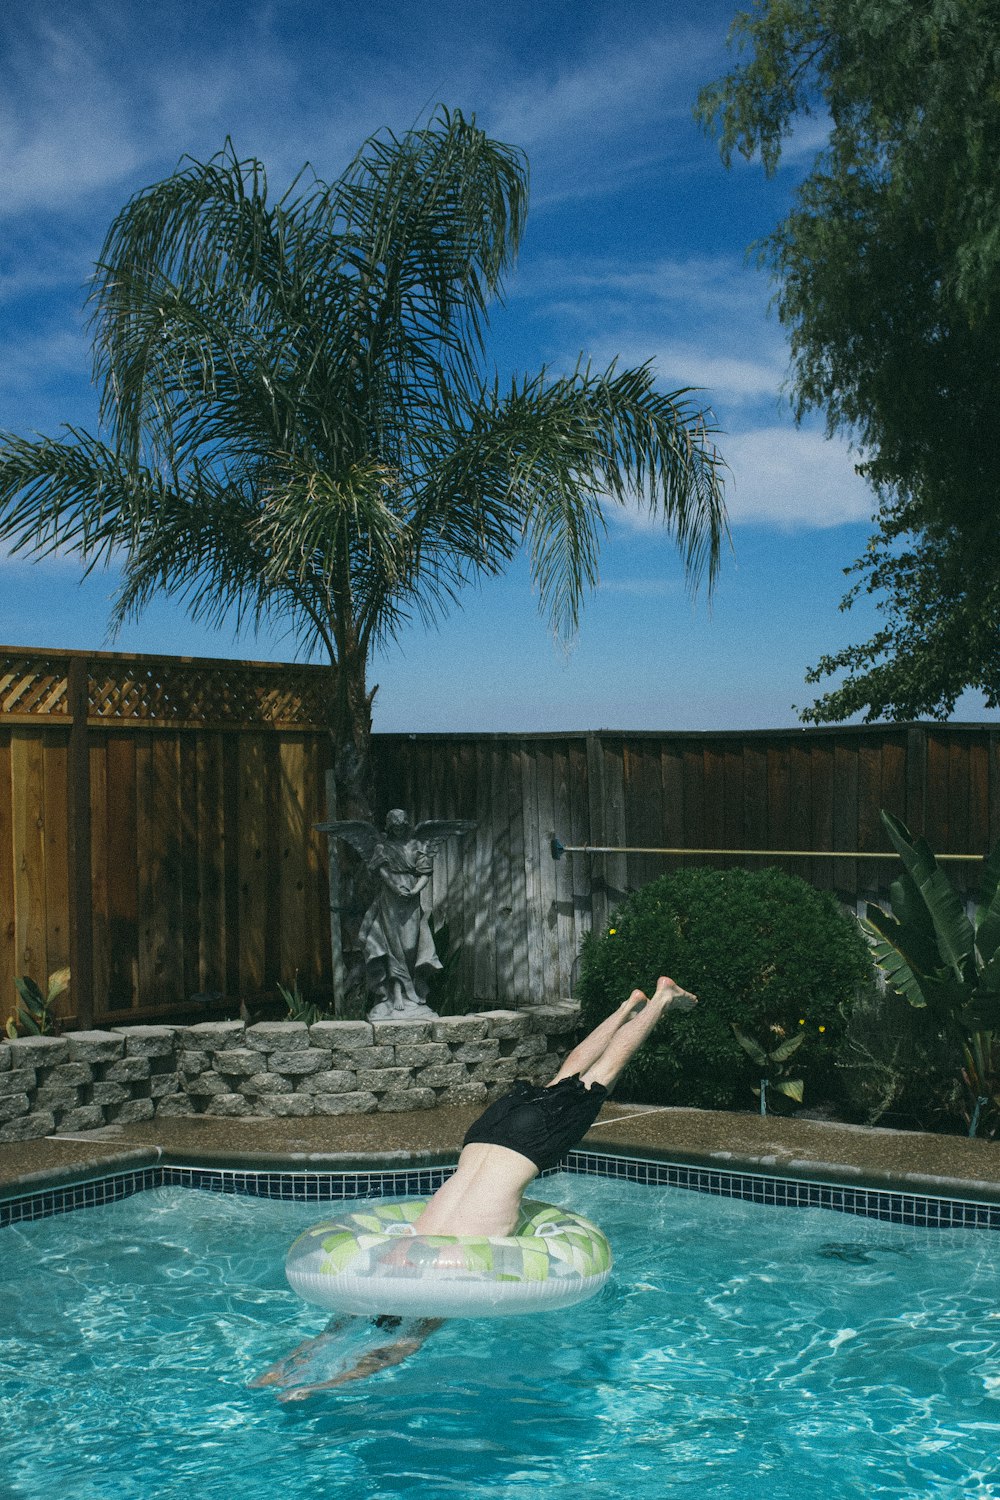 persona buceando en una piscina subterránea bajo el cielo azul